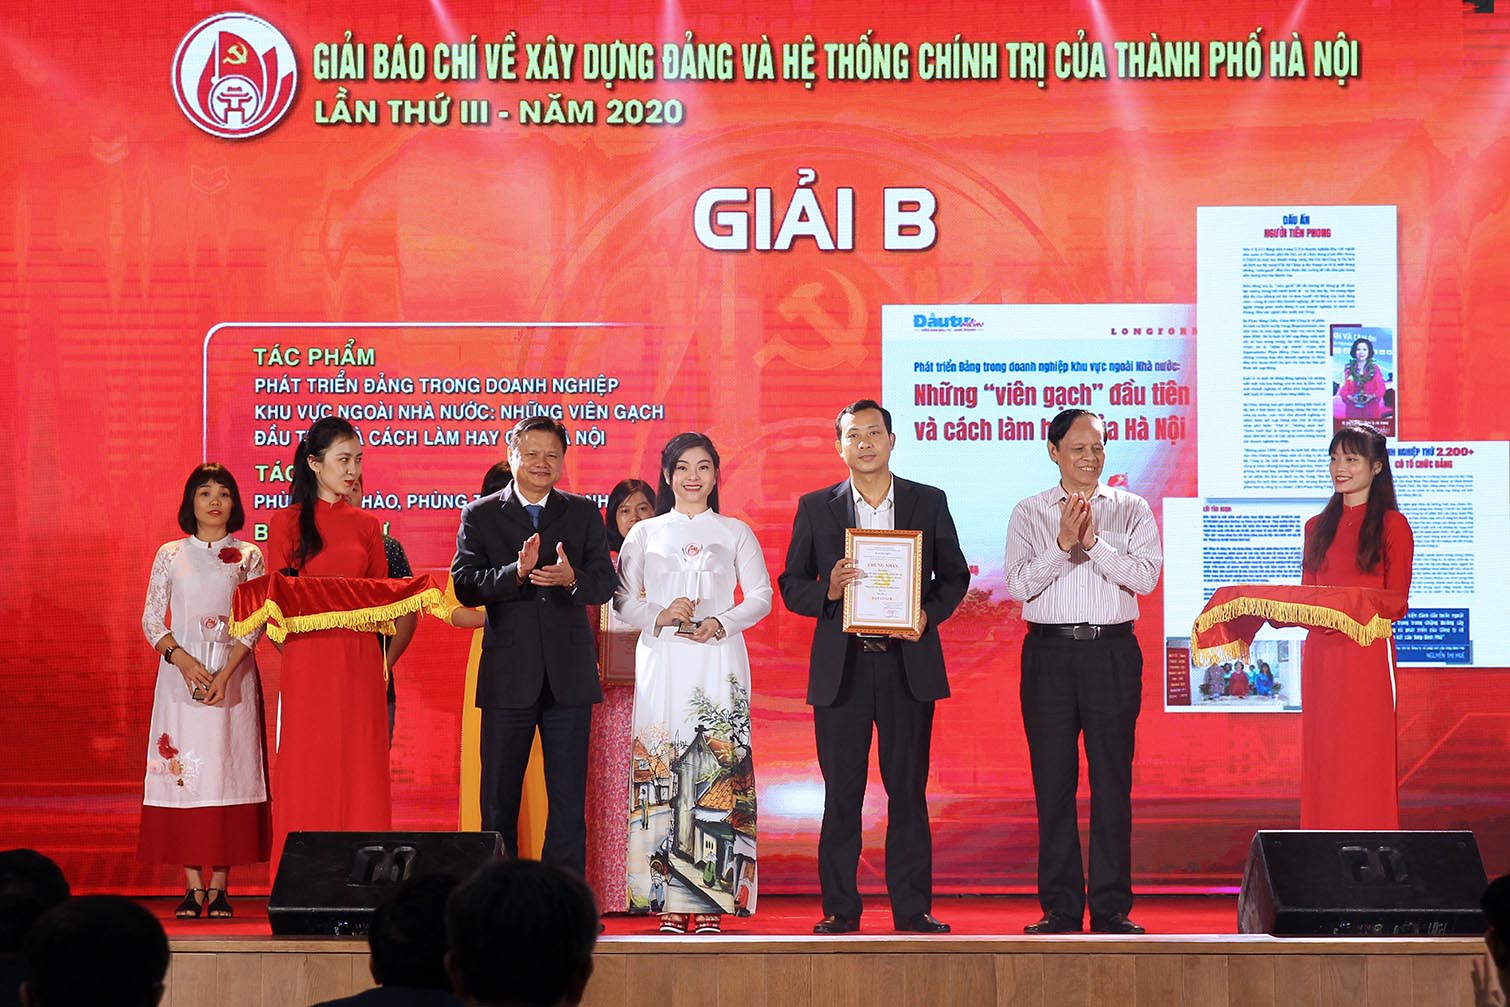 Nhà báo Phùng Huy Hào và Nhà báo Phùng Thị Hồng Hạnh (Báo Đầu tư) được vinh danh tại Giải B với tác phẩm “Phát triển Đảng trong doanh nghiệp khu vực ngoài Nhà nước: Những viên gạch đầu tiên và cách làm hay của Hà Nội”